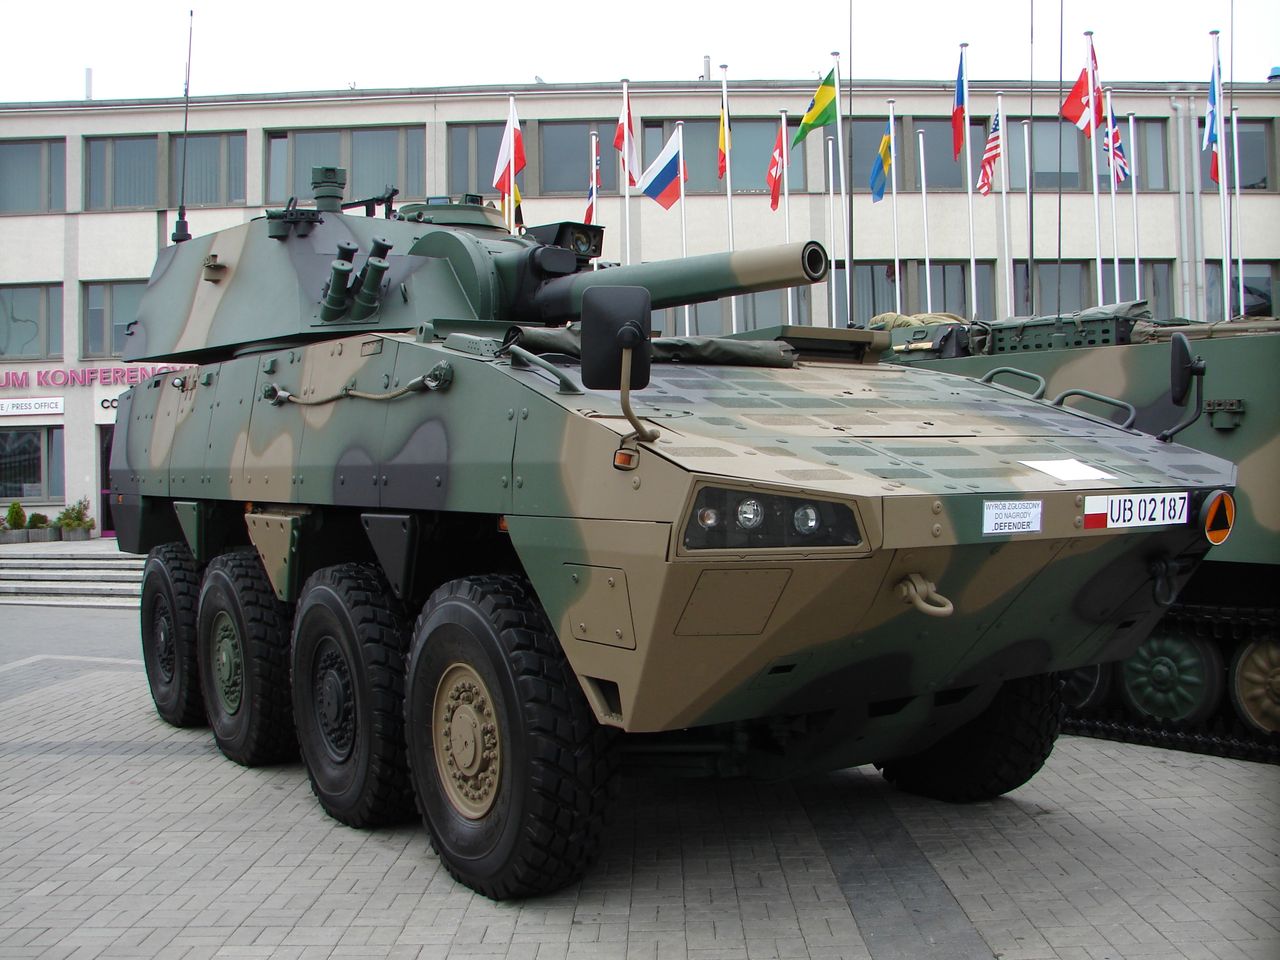 Samobieżny moździerz M120 Rak. Armia Tajwanu chce kupić polską broń